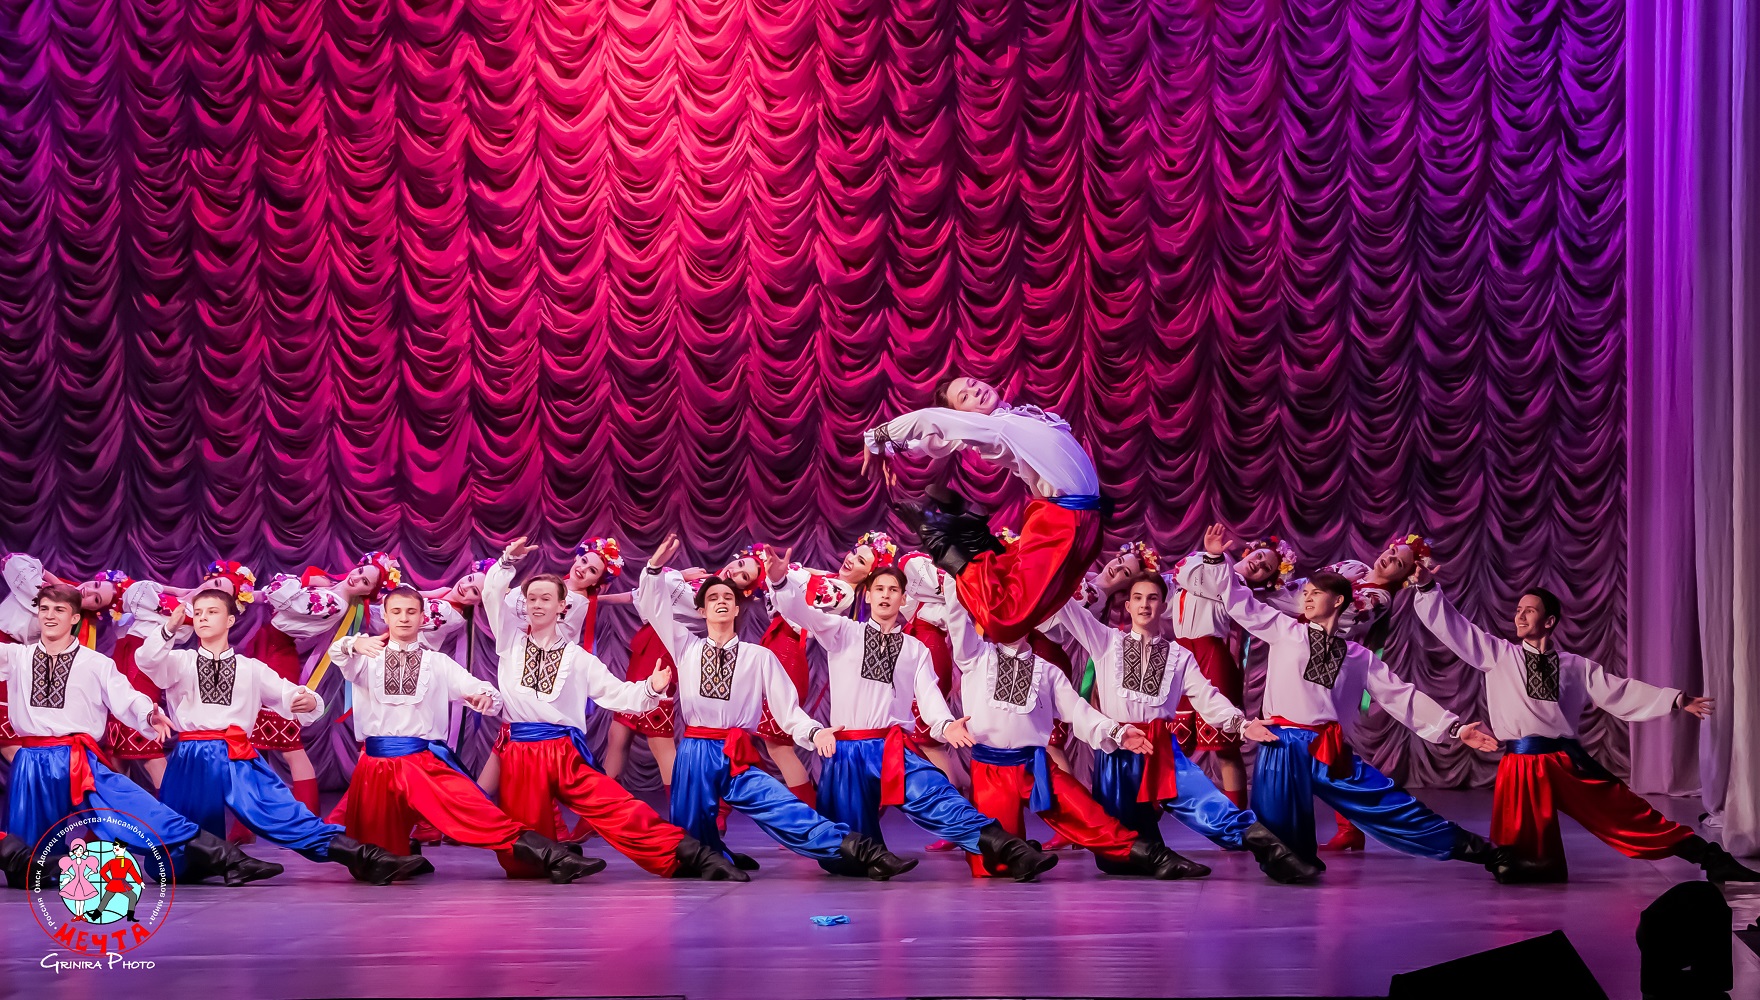 Гопак (Украинский танец)